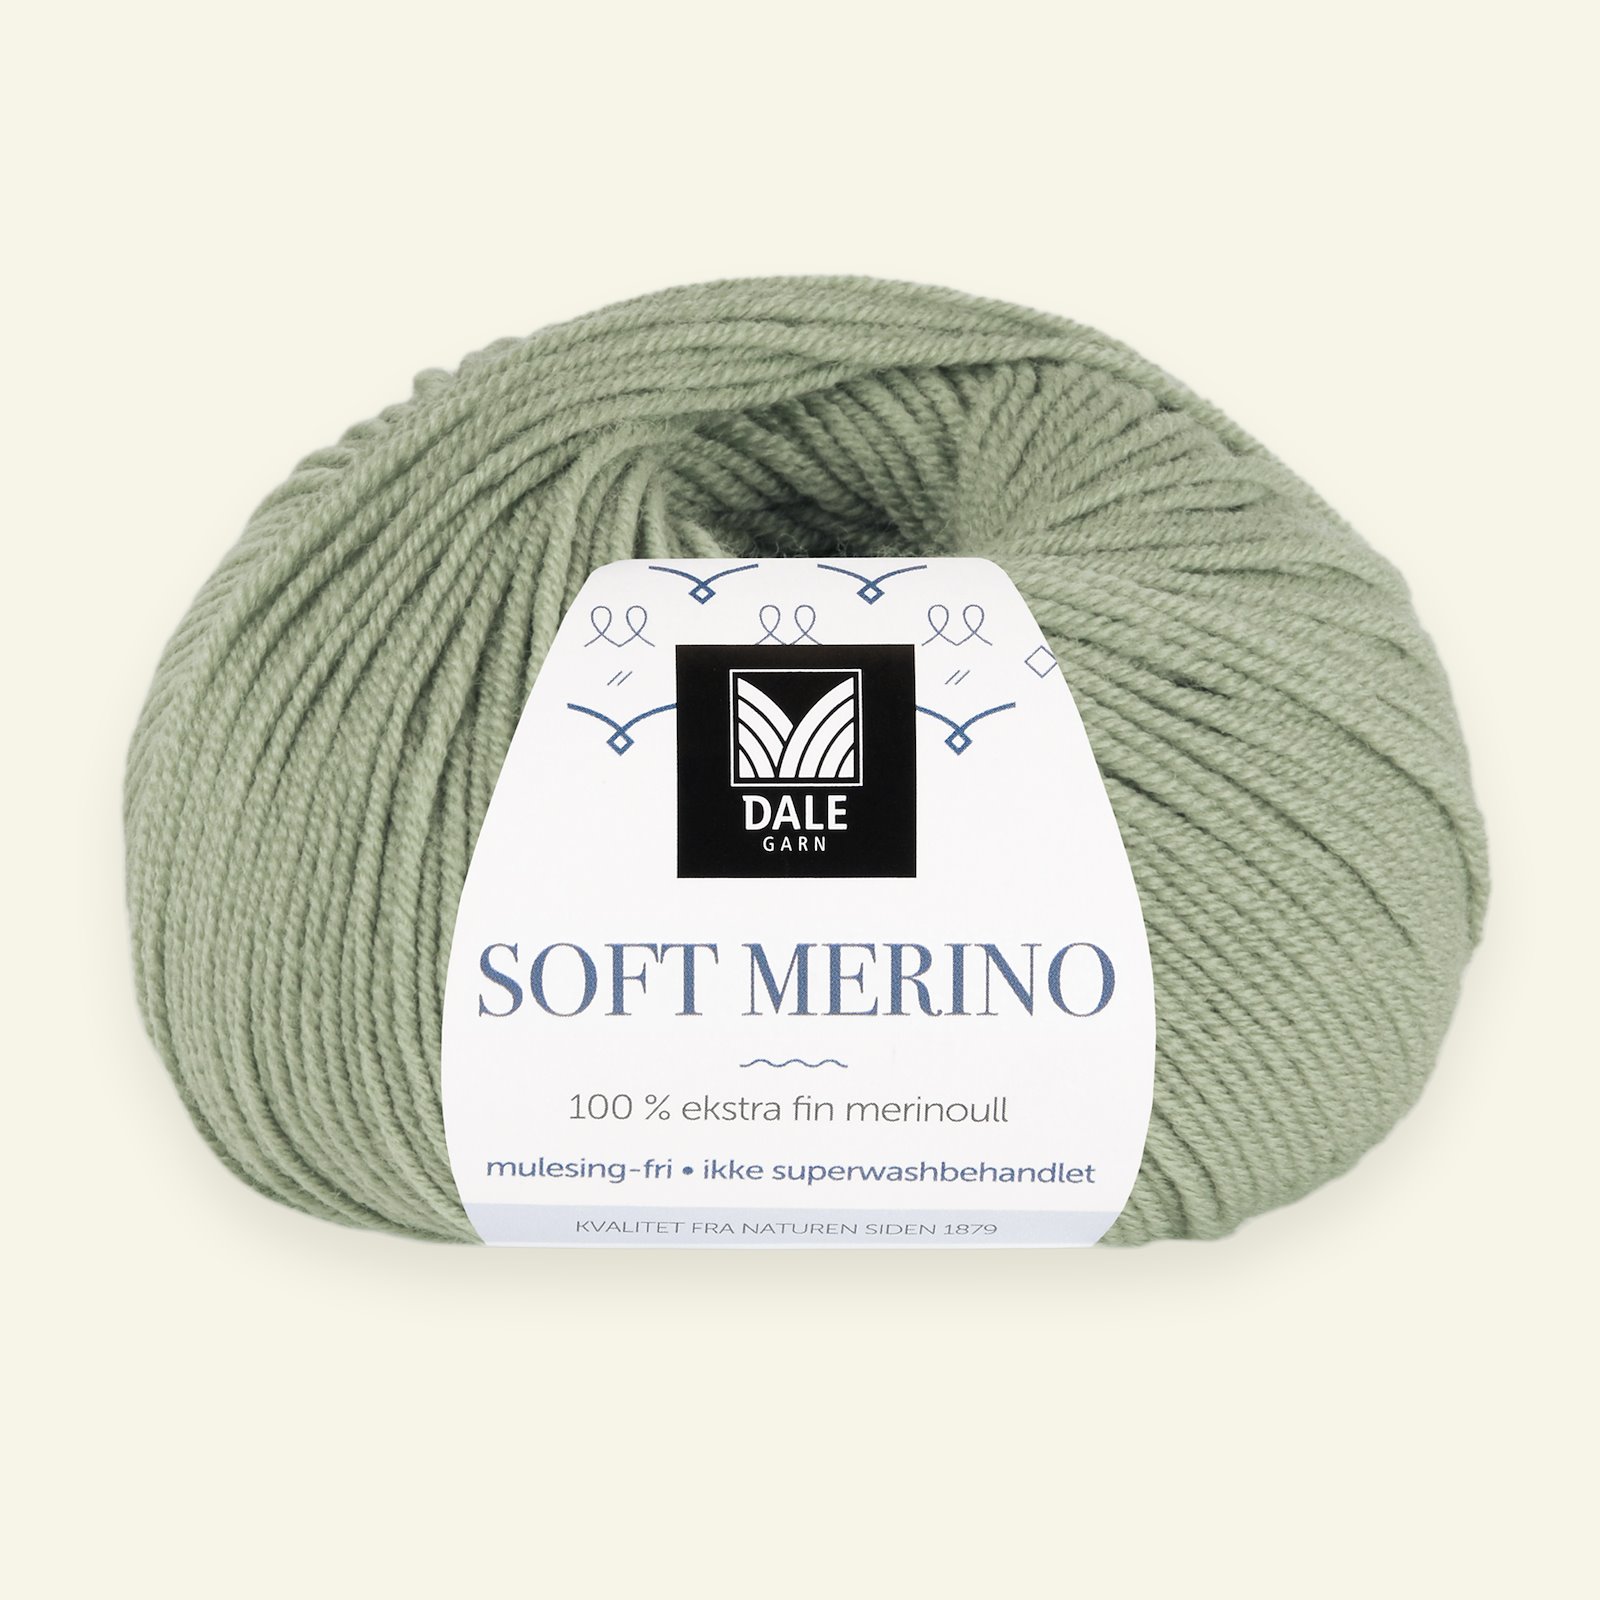 Dale Garn, 100% ekstra fint merinogarn "Soft Merino", Jadegrønn (3010) 90000331_pack